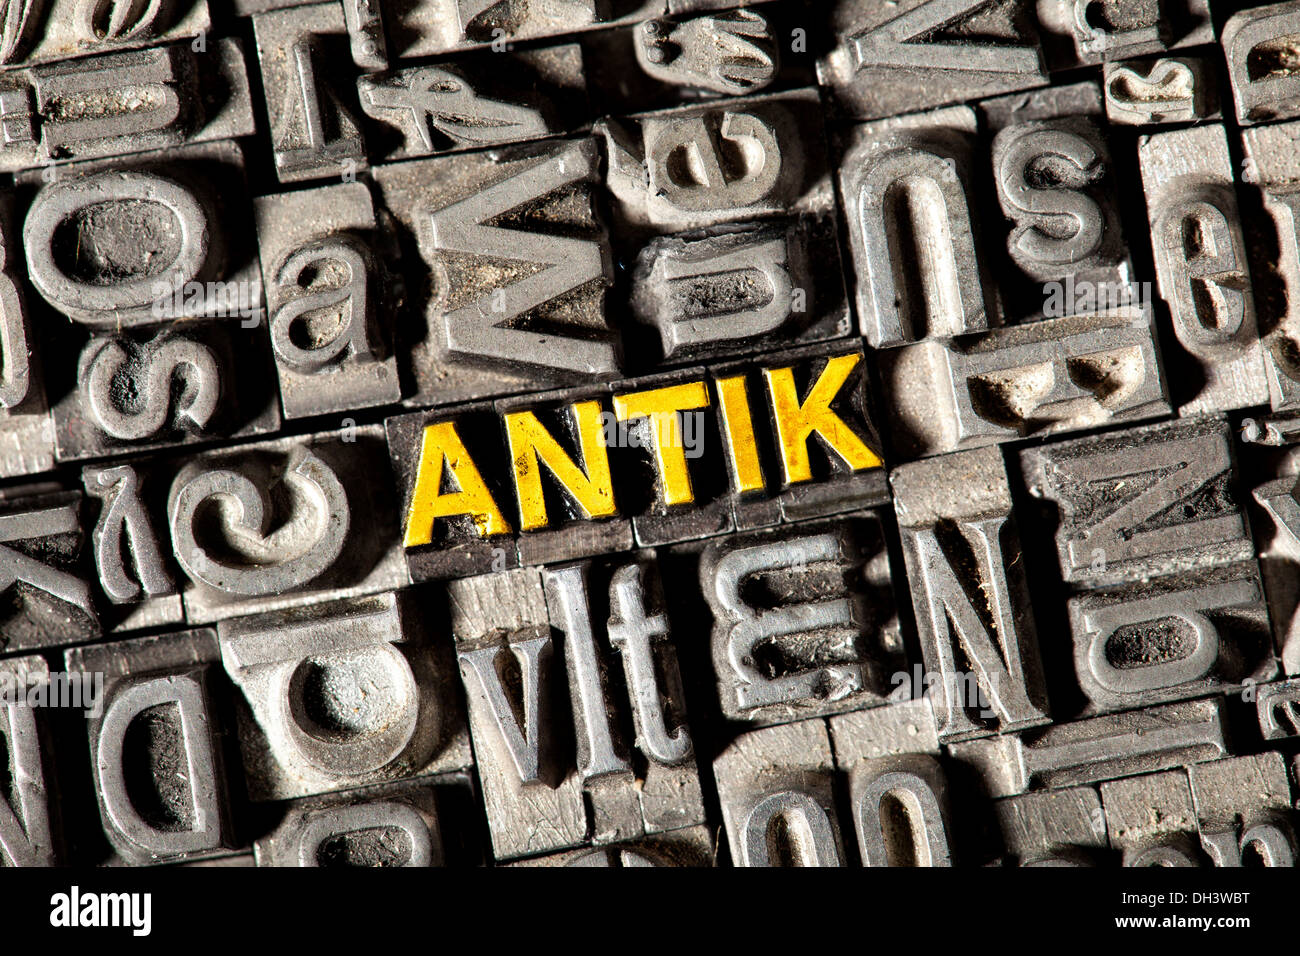 Alten führen Buchstaben bilden das Wort "Antik", Deutsch für "Antik" Stockfoto